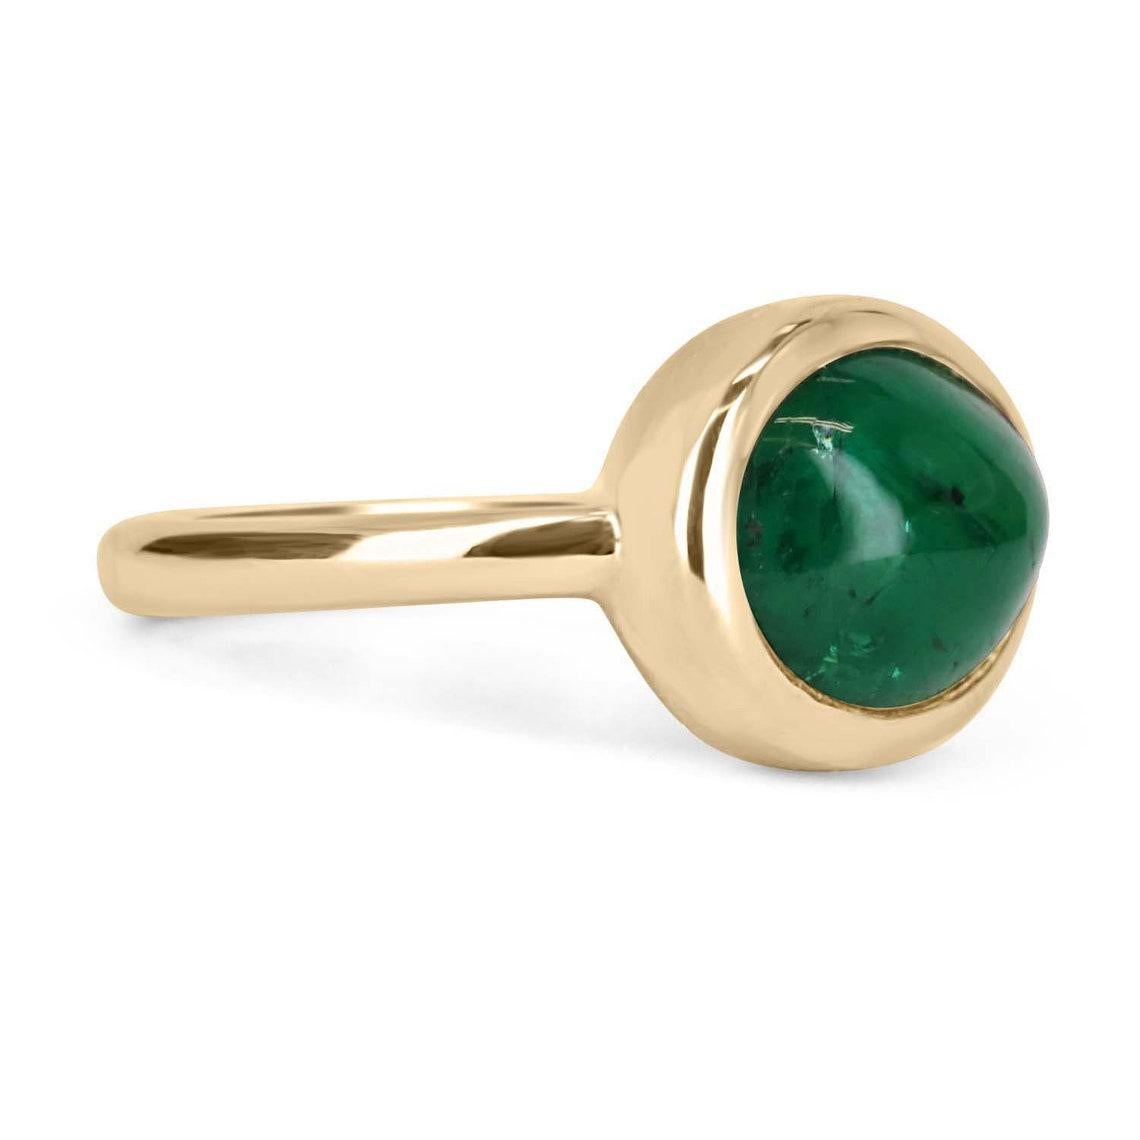 Ein Ring mit Smaragd-Cabochon in Lünettenfassung aus 14 Karat Gelbgold. Hier sehen Sie diesen schönen 4.77-Karat-Smaragd-Cabochon aus natürlichem Erdabbau. Dieser Stein hat eine wunderschöne, dunkelgrüne Farbe und einen sehr guten Glanz. Diese